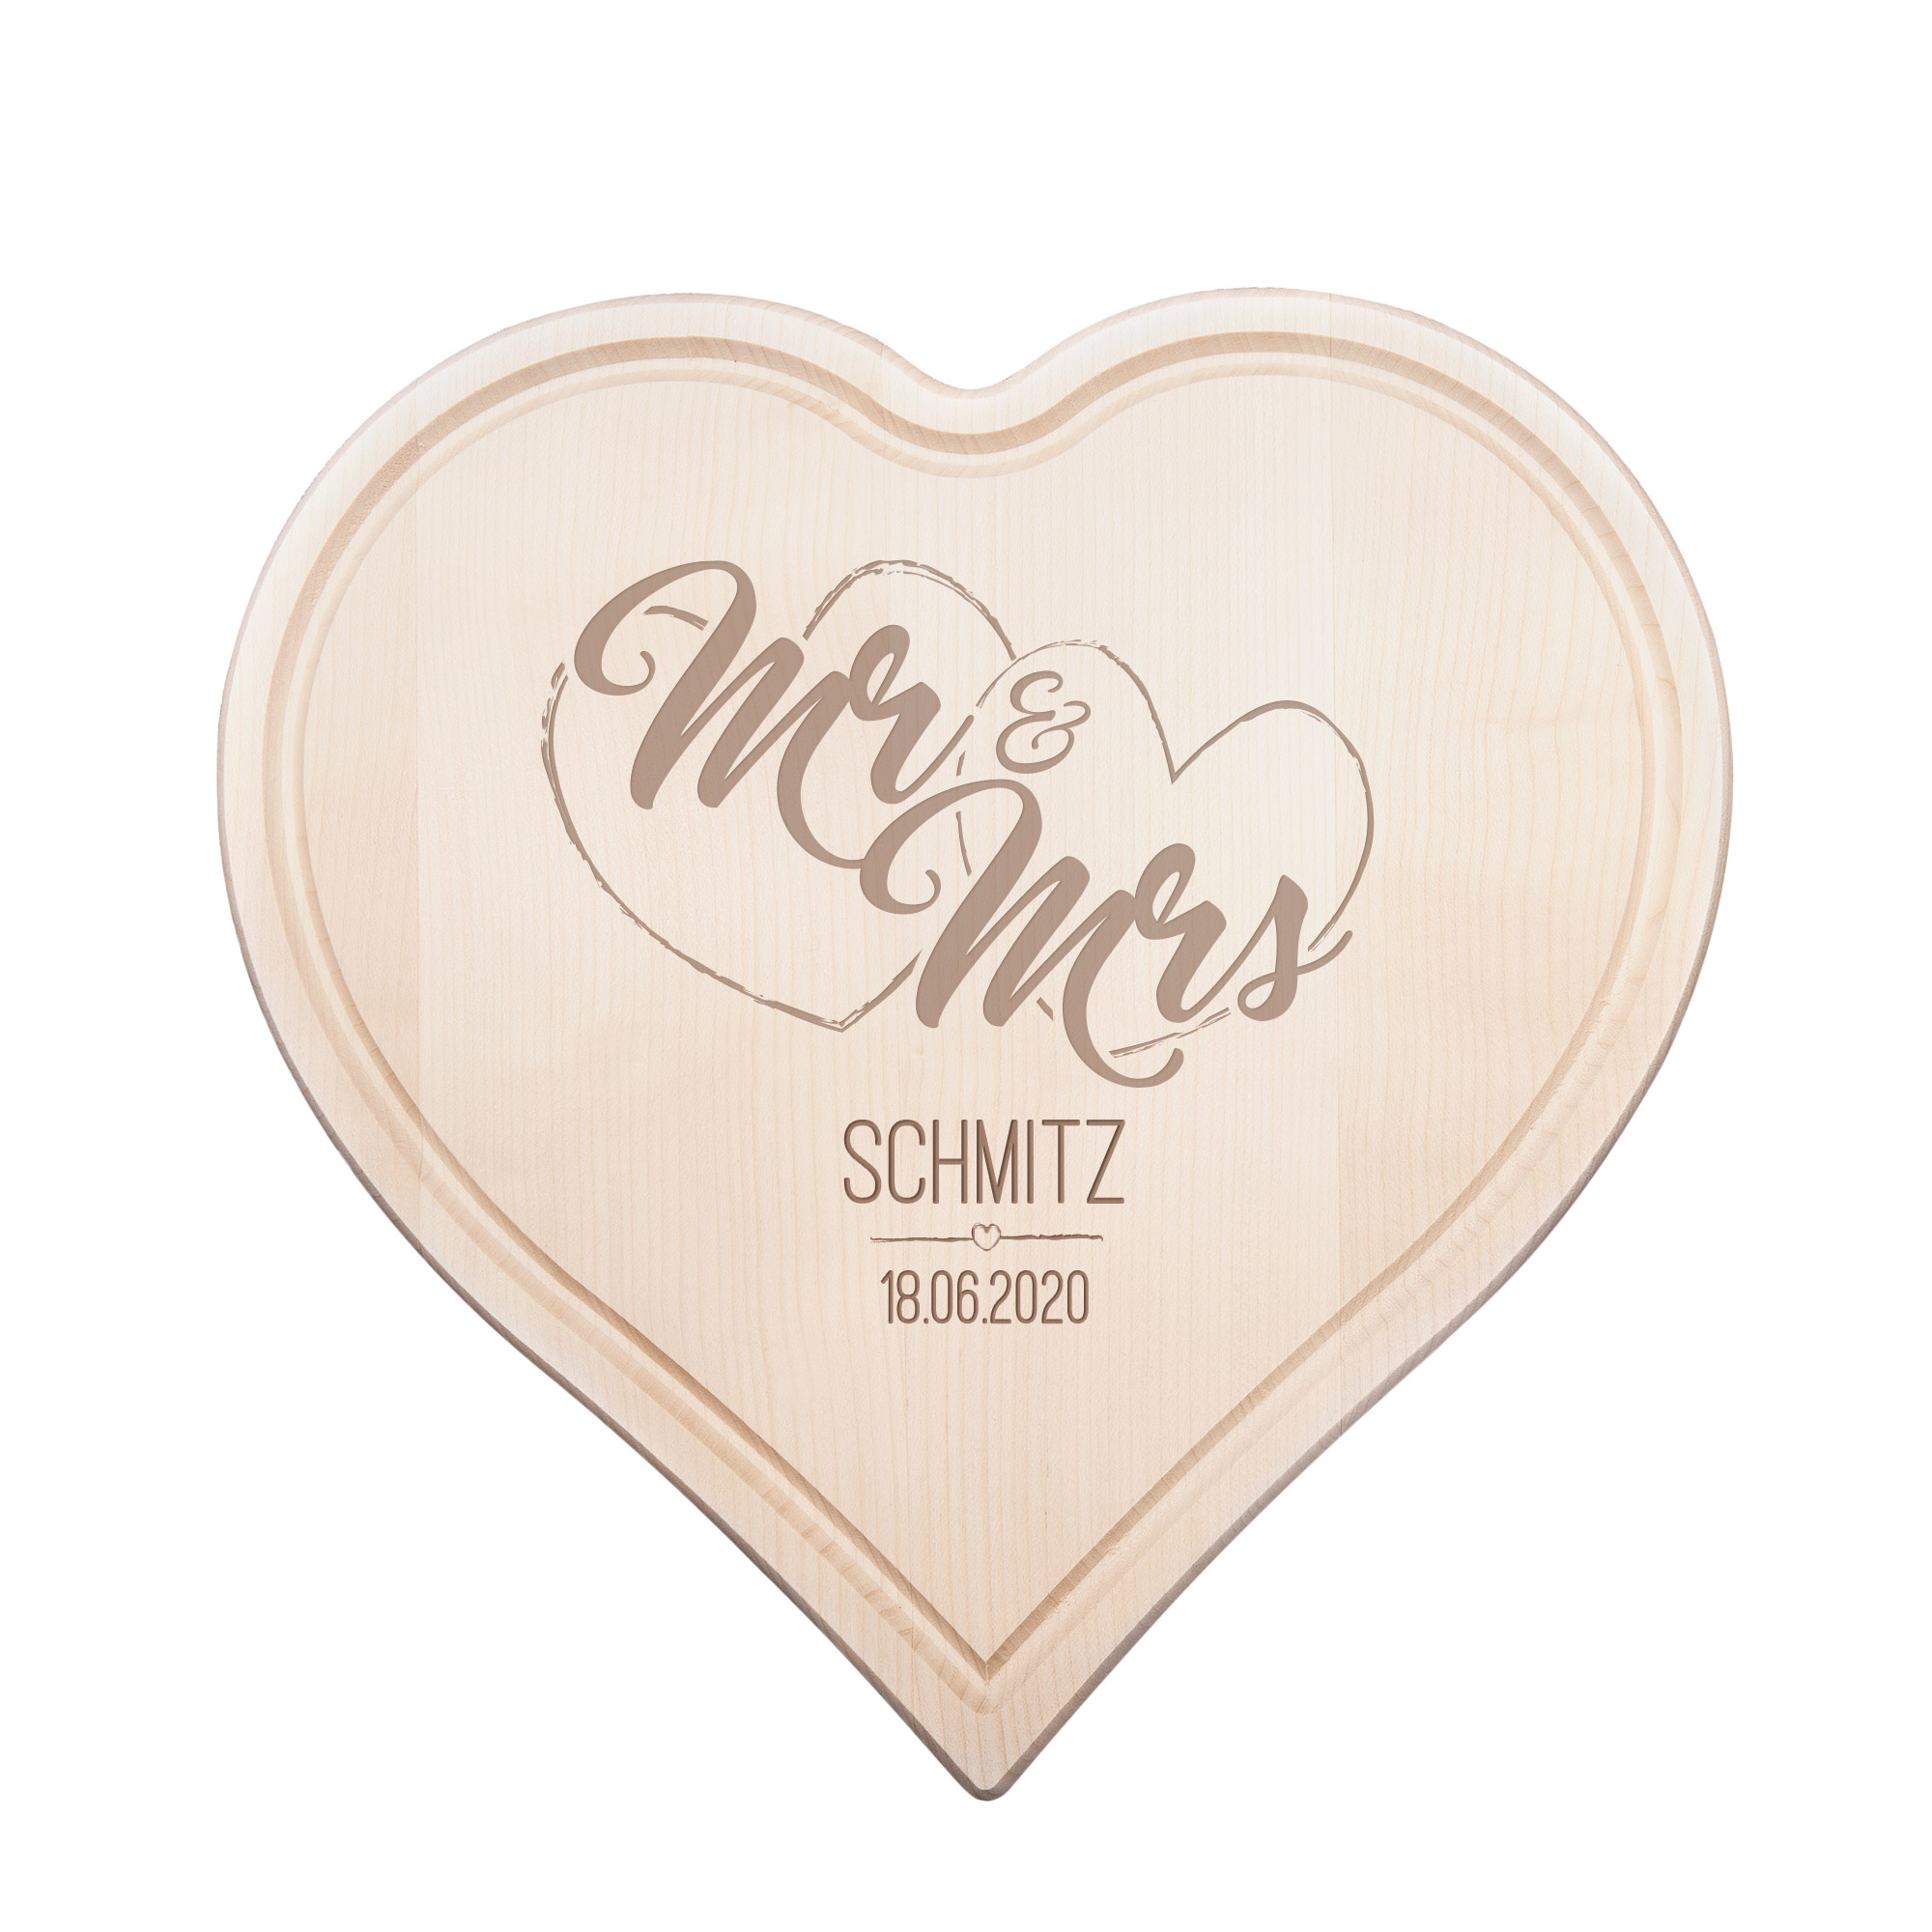 Herzbrett - Mr & Mrs - Personalisiert